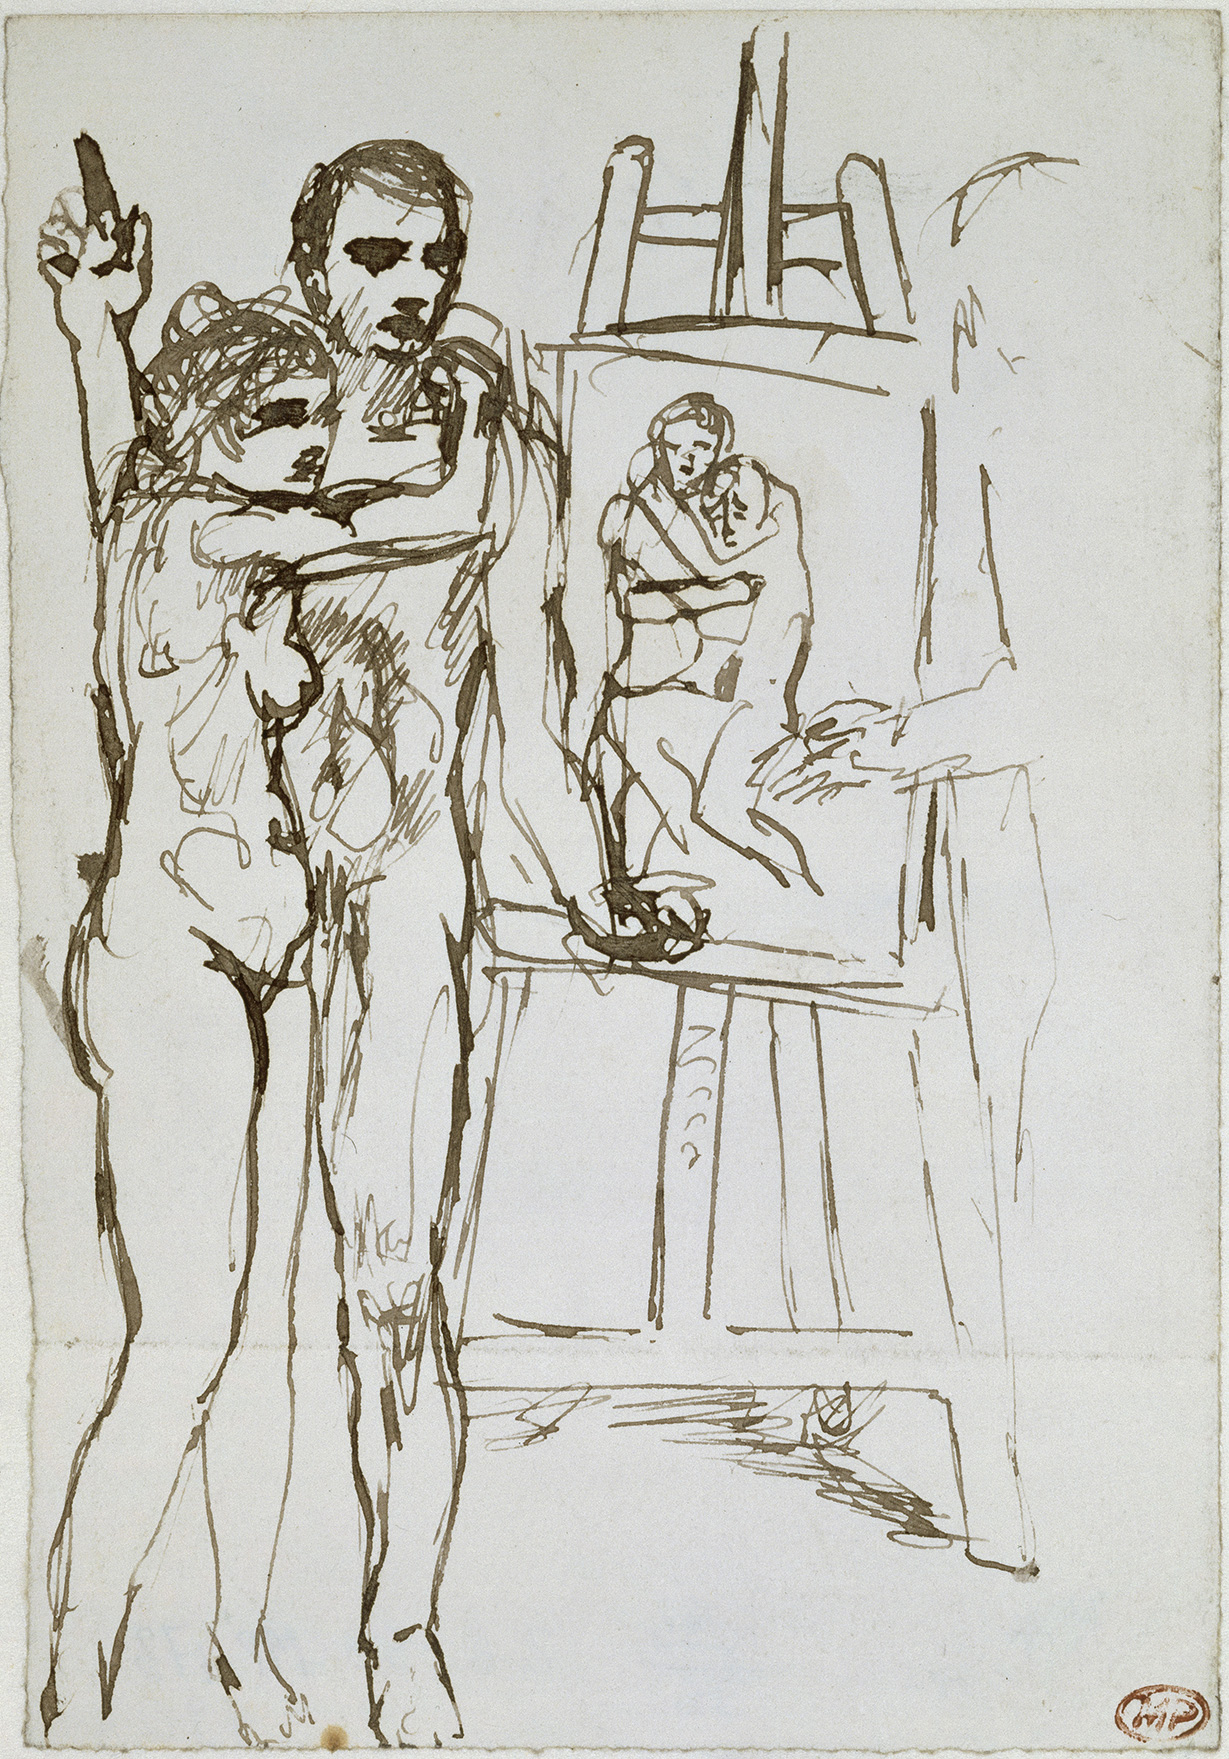 Picasso - Etude pour "La vie" - MP473 - 93-003582